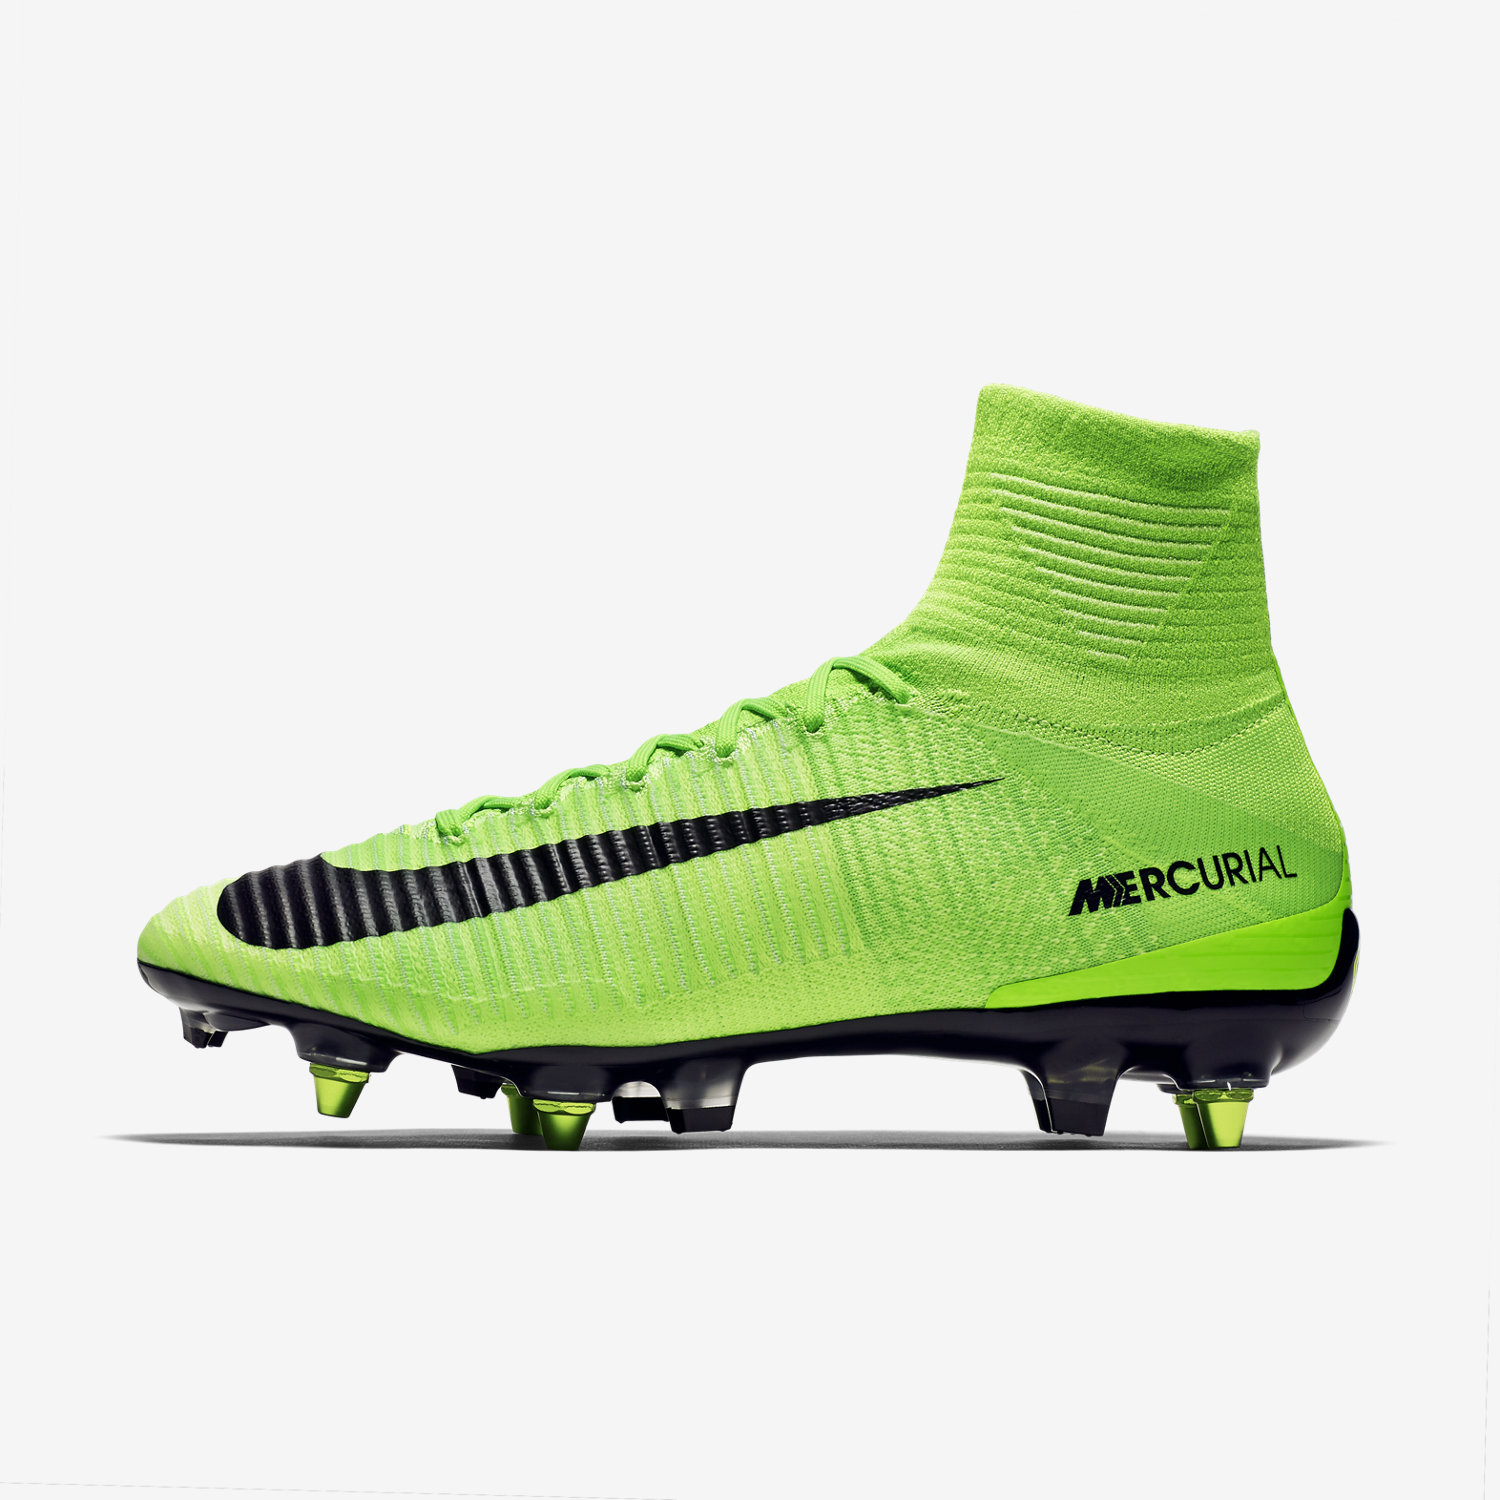 ποδοσφαιρικα παπουτσια ανδρικα Nike Mercurial Superfly V SG-PRO Anti-Clog πρασινο/πρασινο/ασπρα/μαυρ